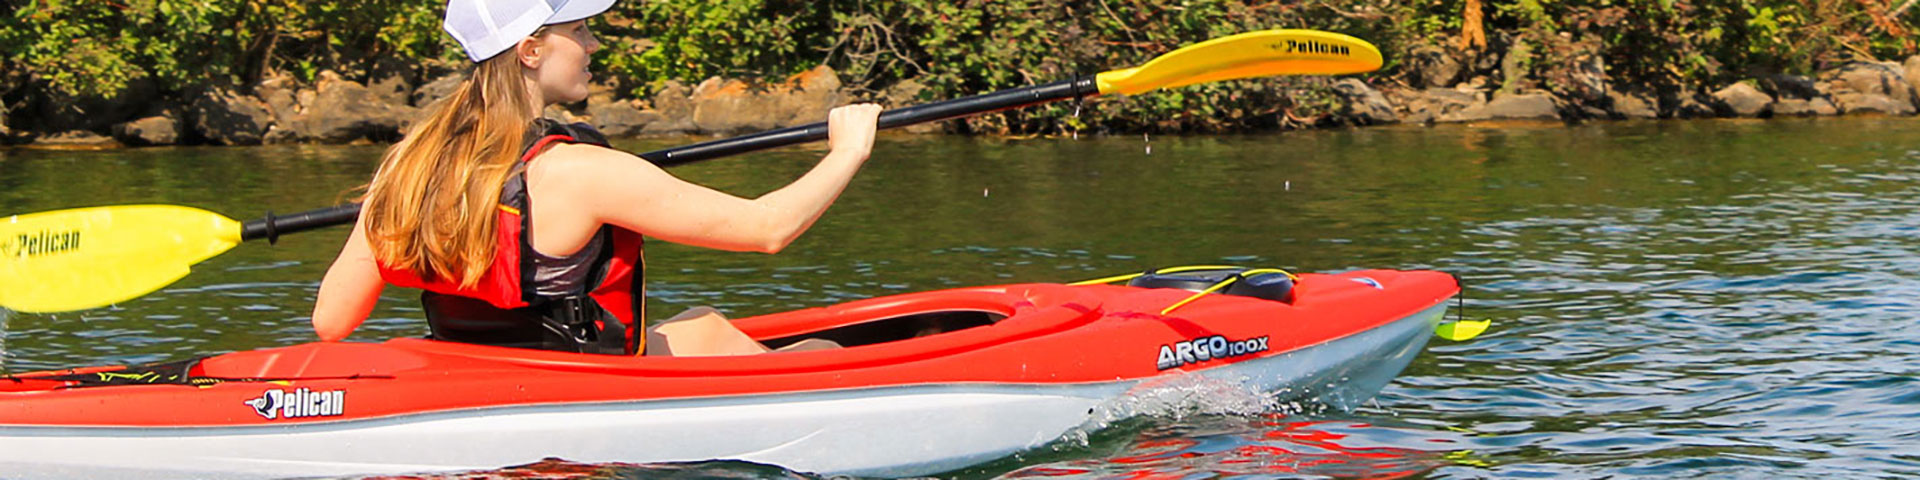 Pelican Argo 100X sit-in kayak